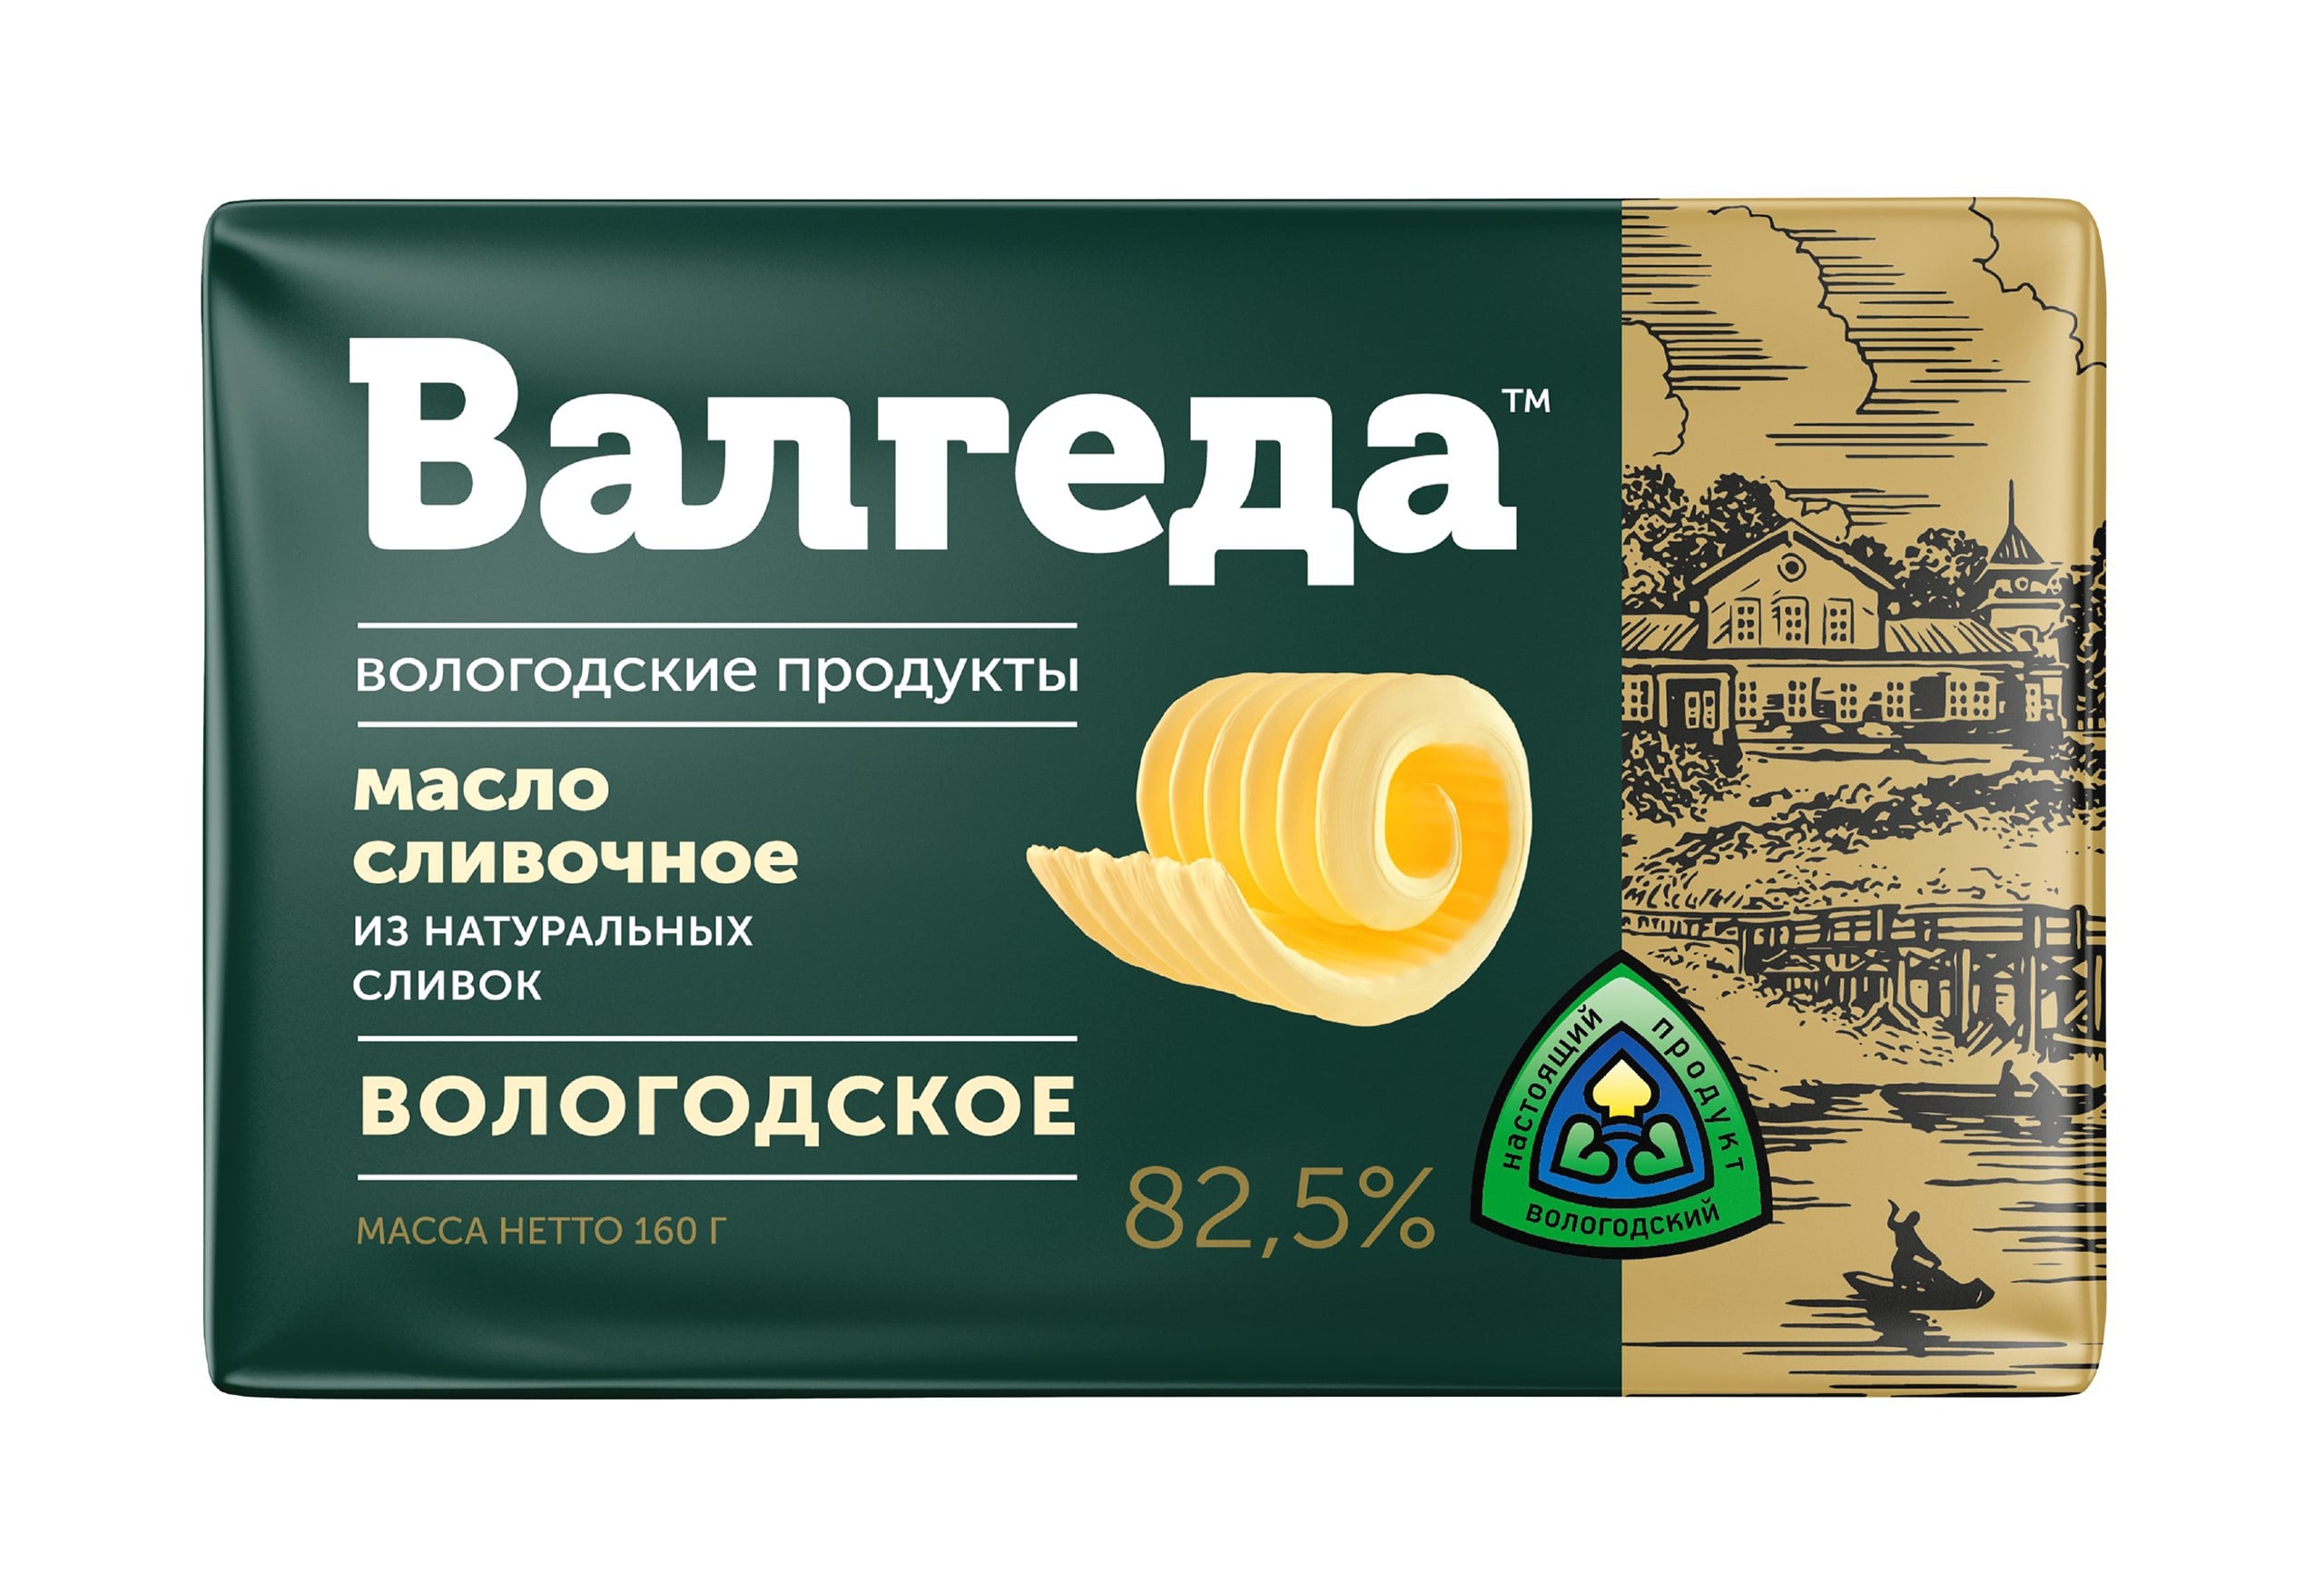 Vologda Butter "Valgeda" 82,5%